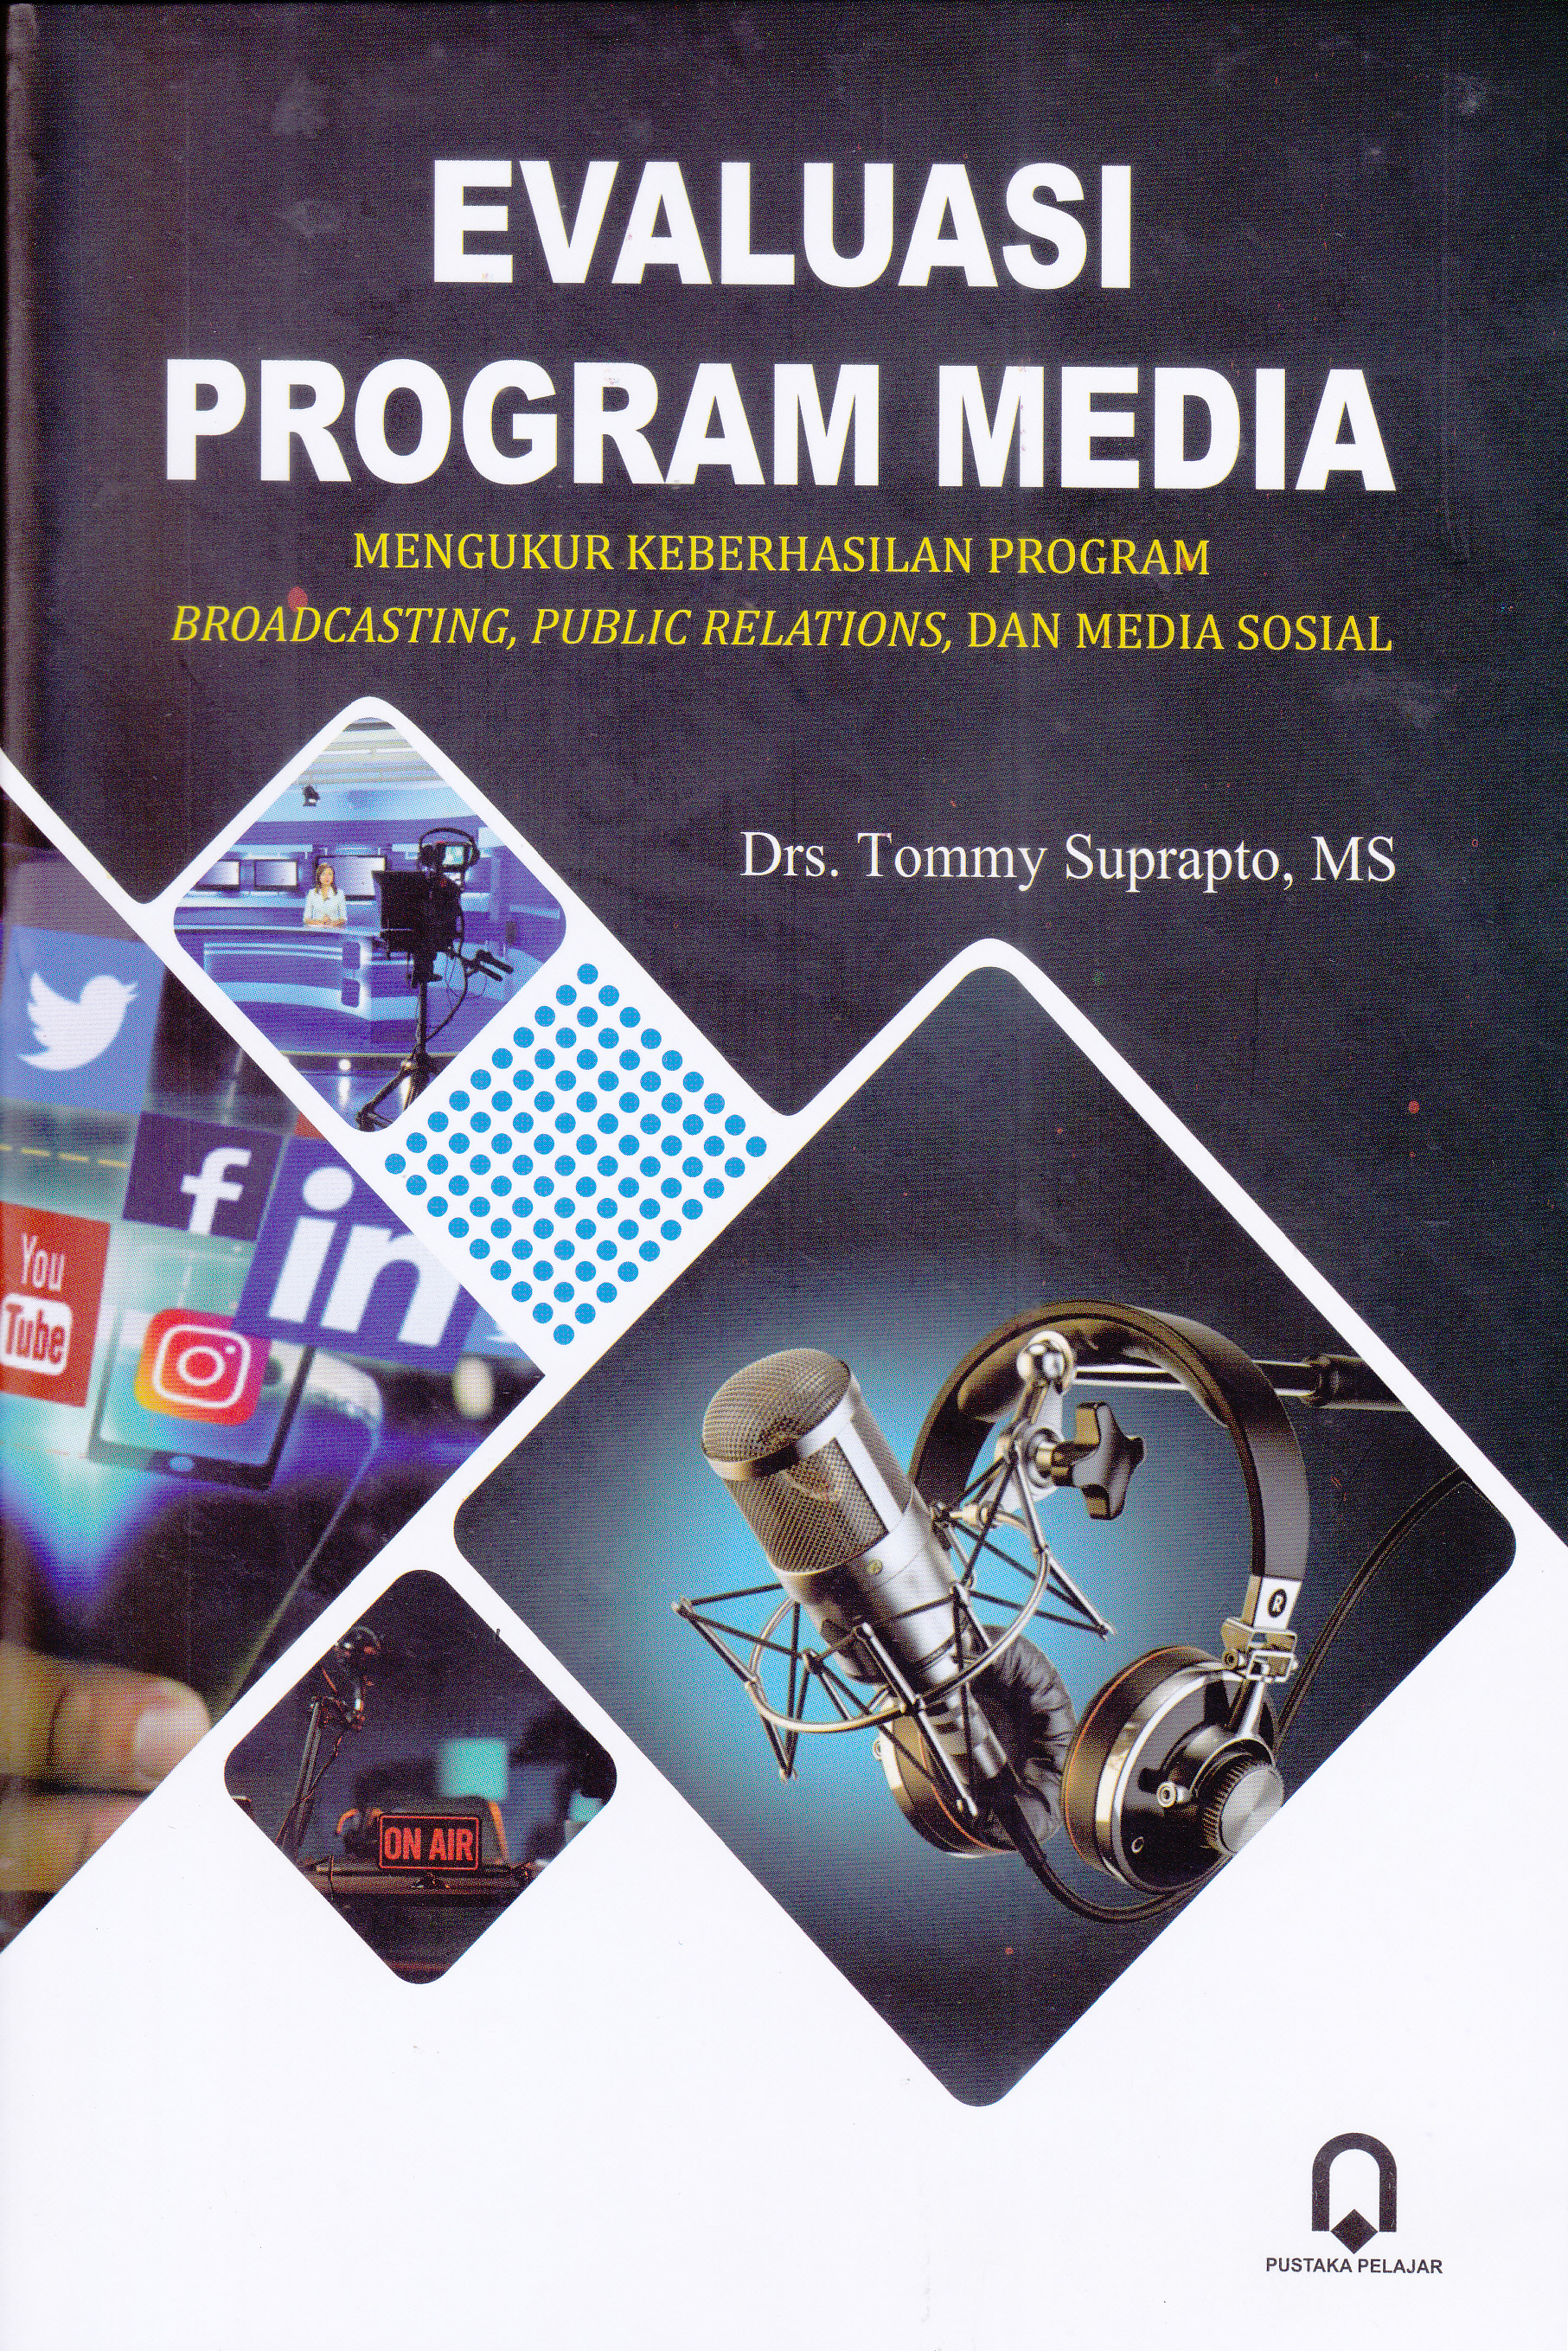 Evaluasi Program Media : MENGUKUR KEBERHASILAN PROGRAM BROADCASTING, PUBLIC RELATIONS, DAN MEDIA SOSIAL